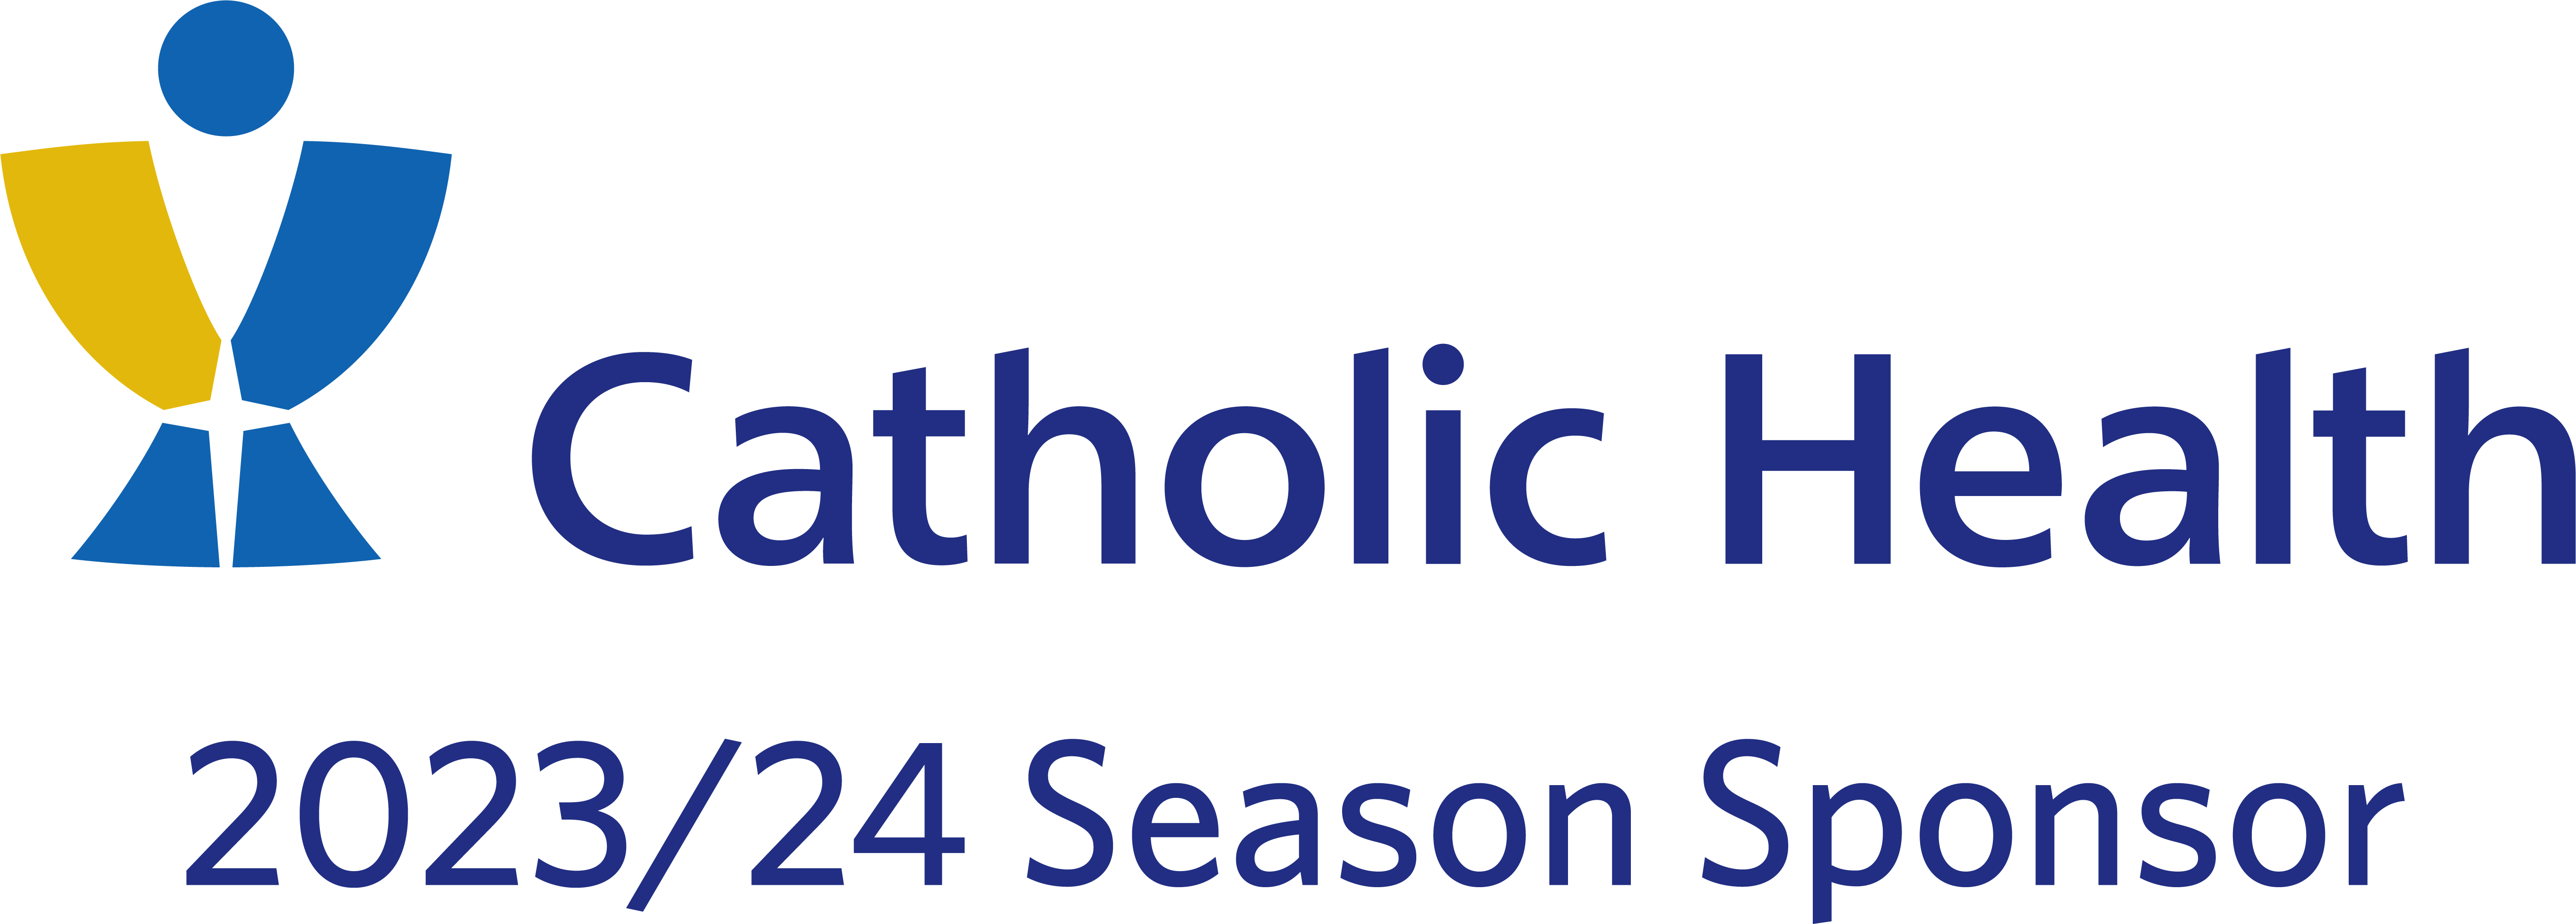 2023/24 Season Sponsor